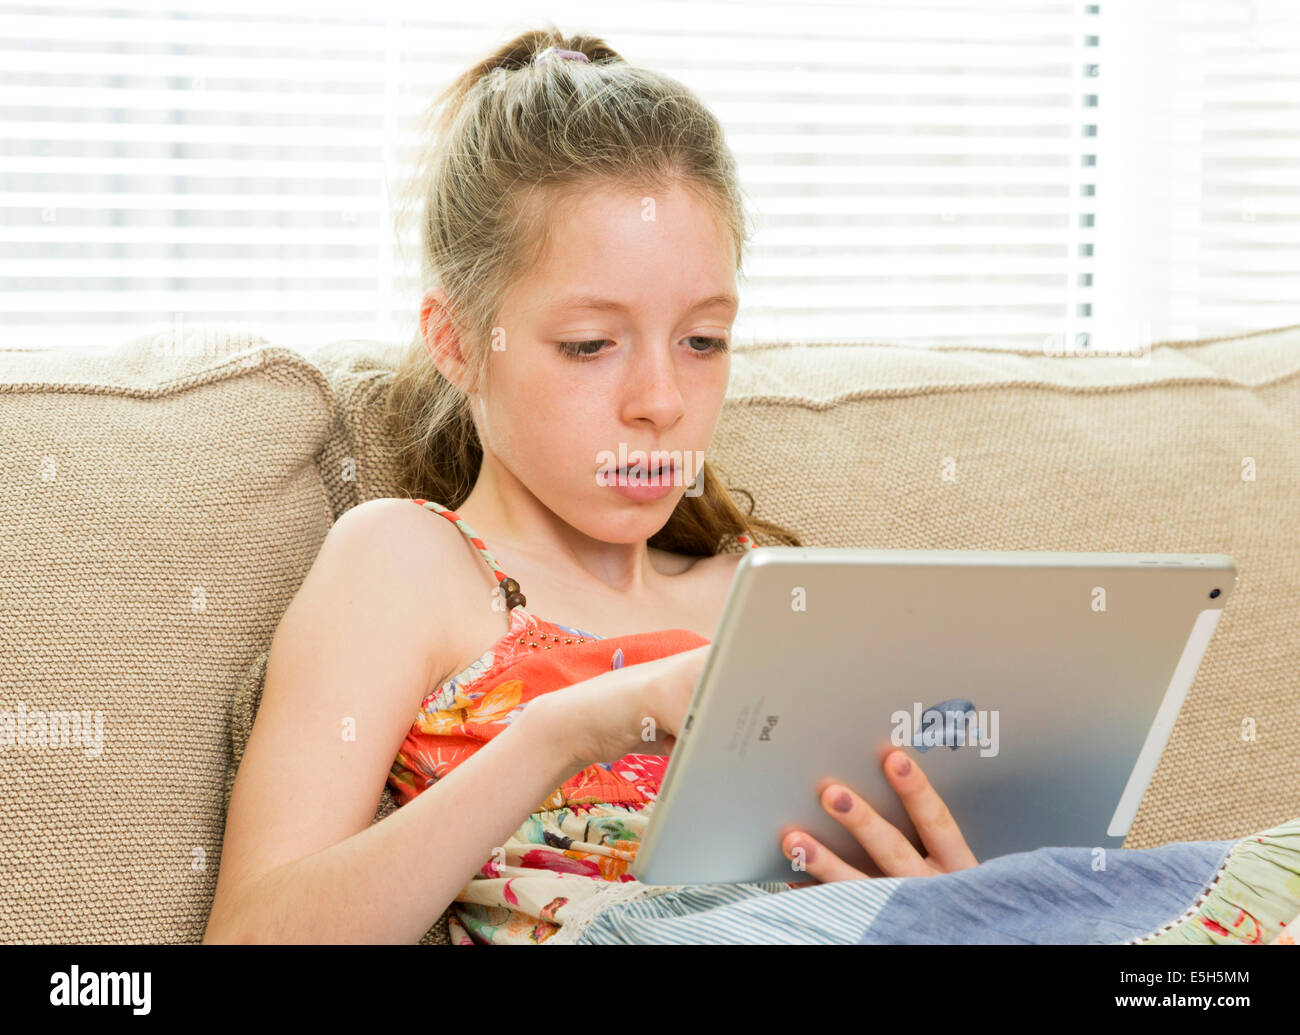 Jeune fille à l'aide d'une tablette iPad Banque D'Images